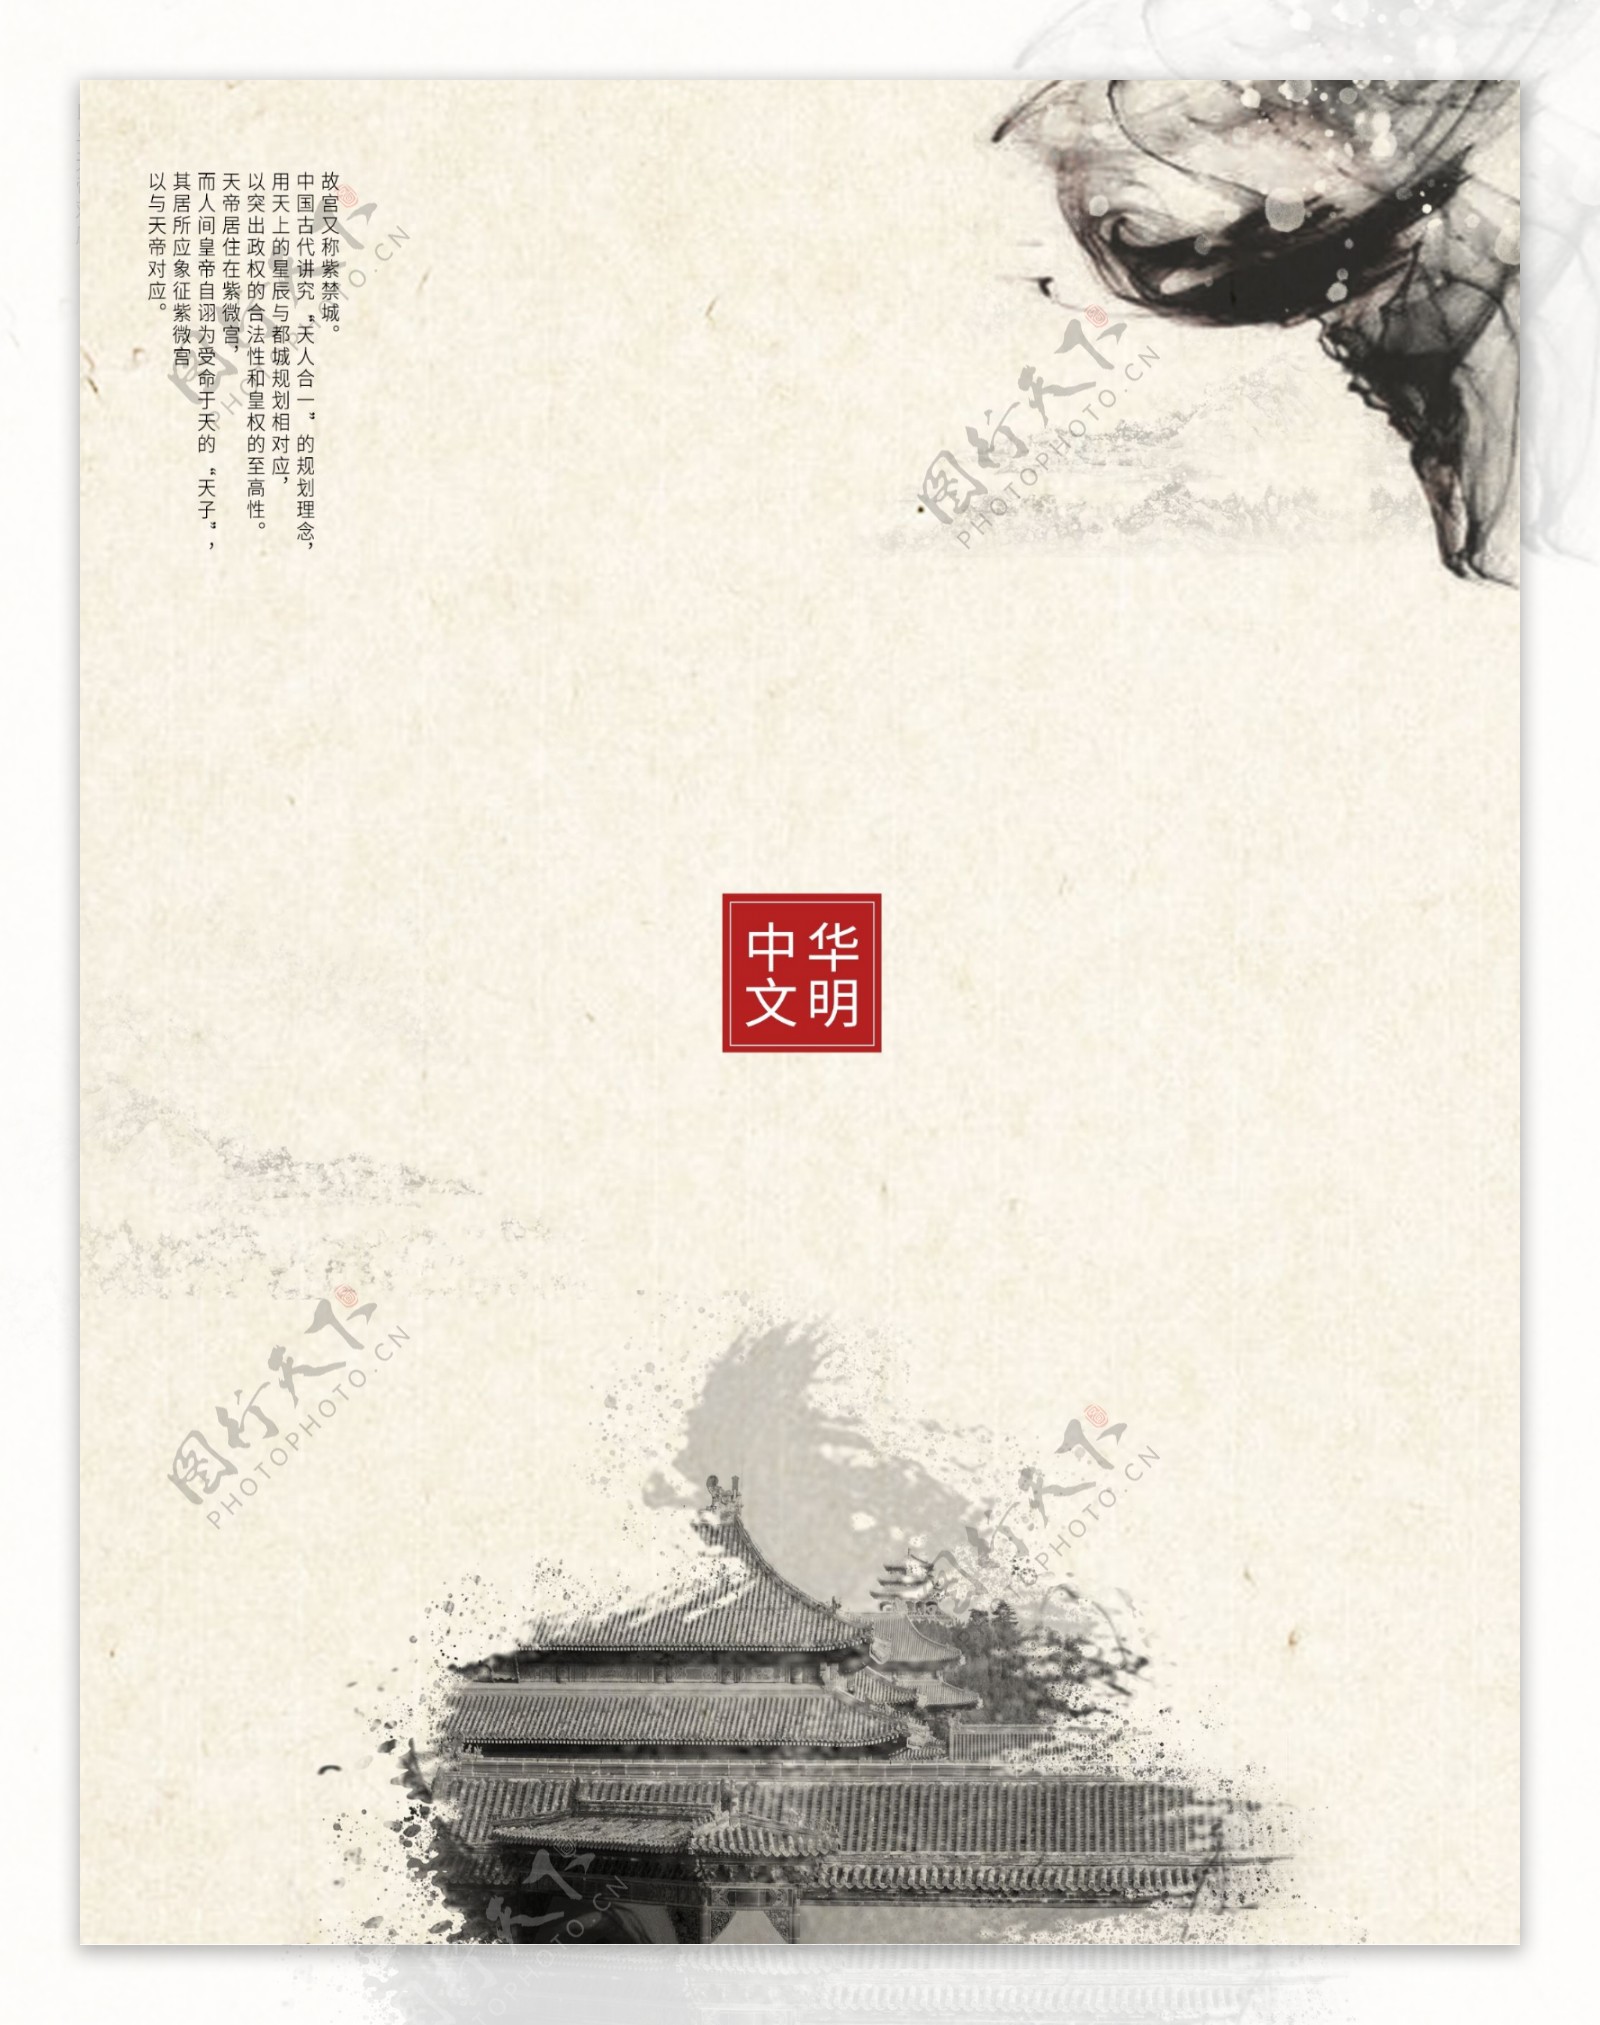 原创中国古风水墨画故宫旅游宣传画册封面